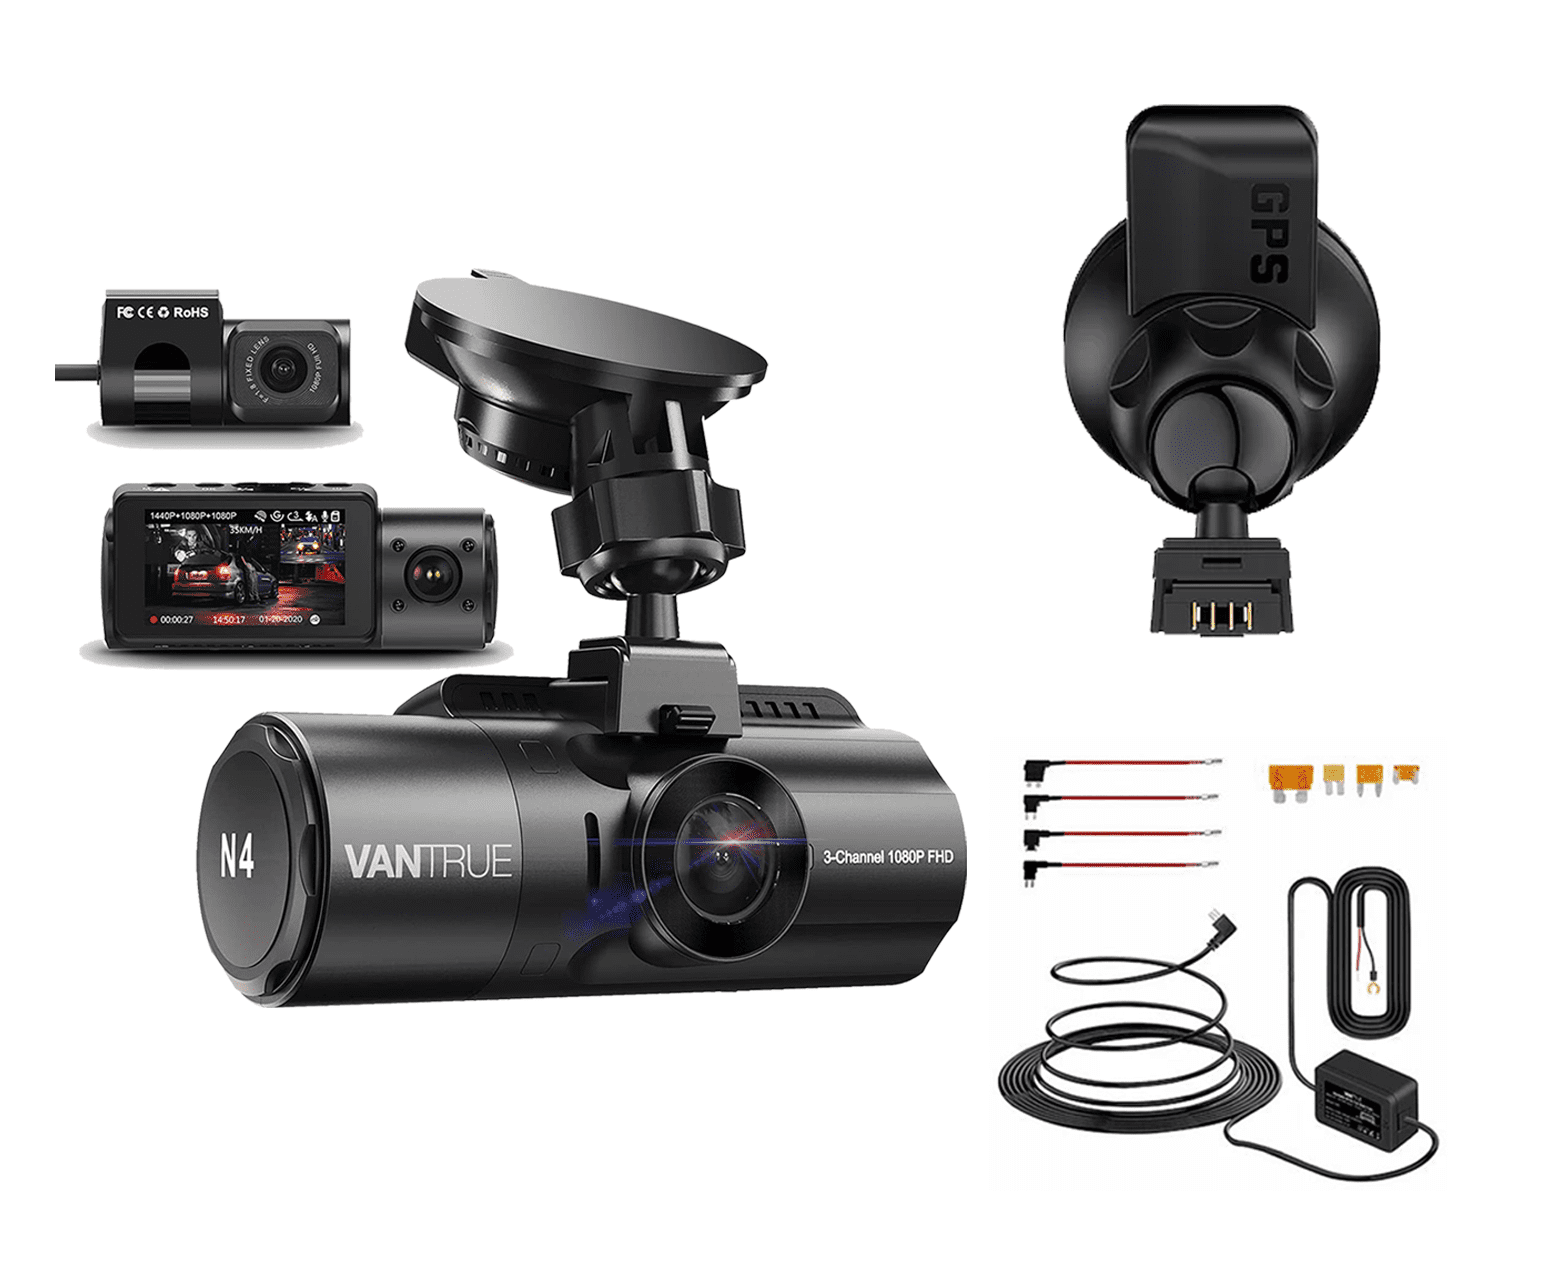 Vantrue N4 3 Channel 1440p Dashcam | mit GPS & Hardwire-Kit - Bundle